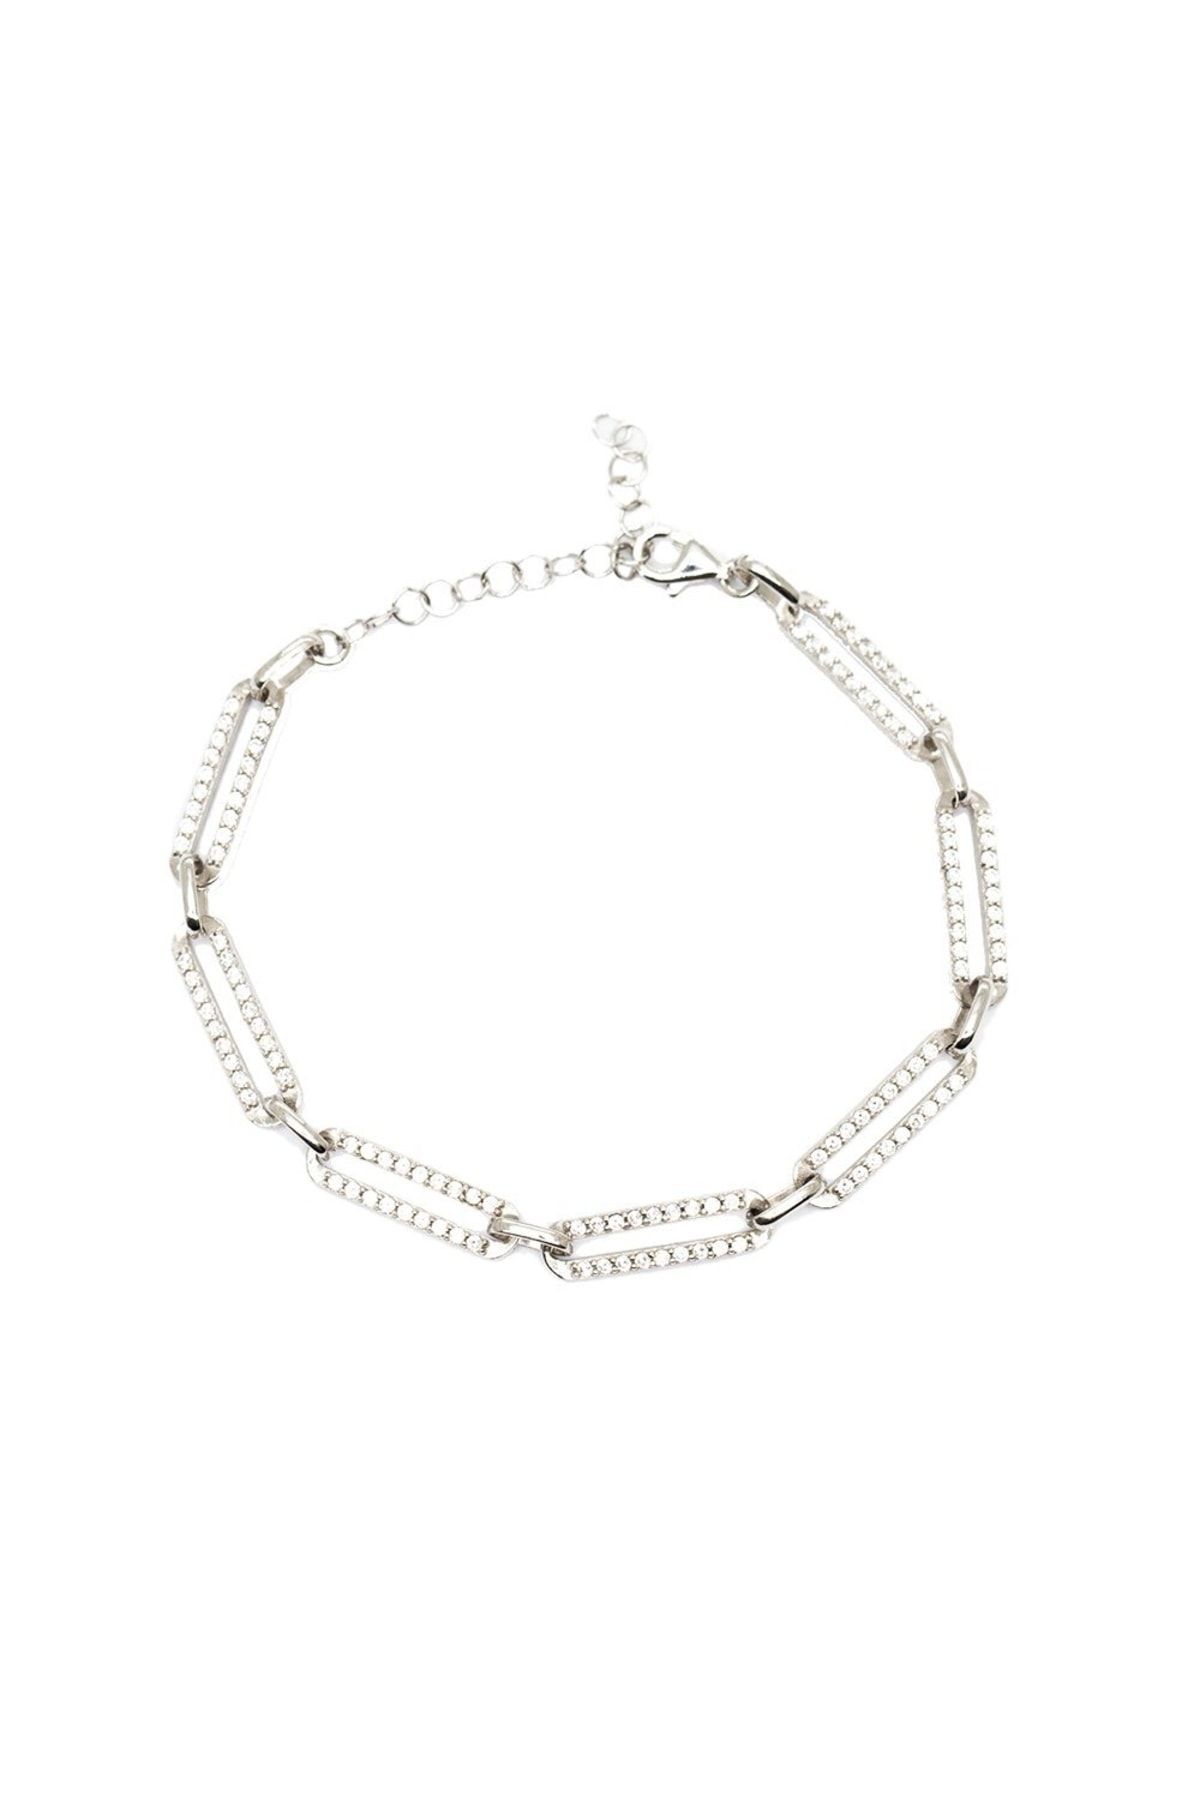 Tesbihane Beyaz Zirkon Taşlı Trend Tasarım Silver Renk 925 Ayar Gümüş Kadın Bileklik